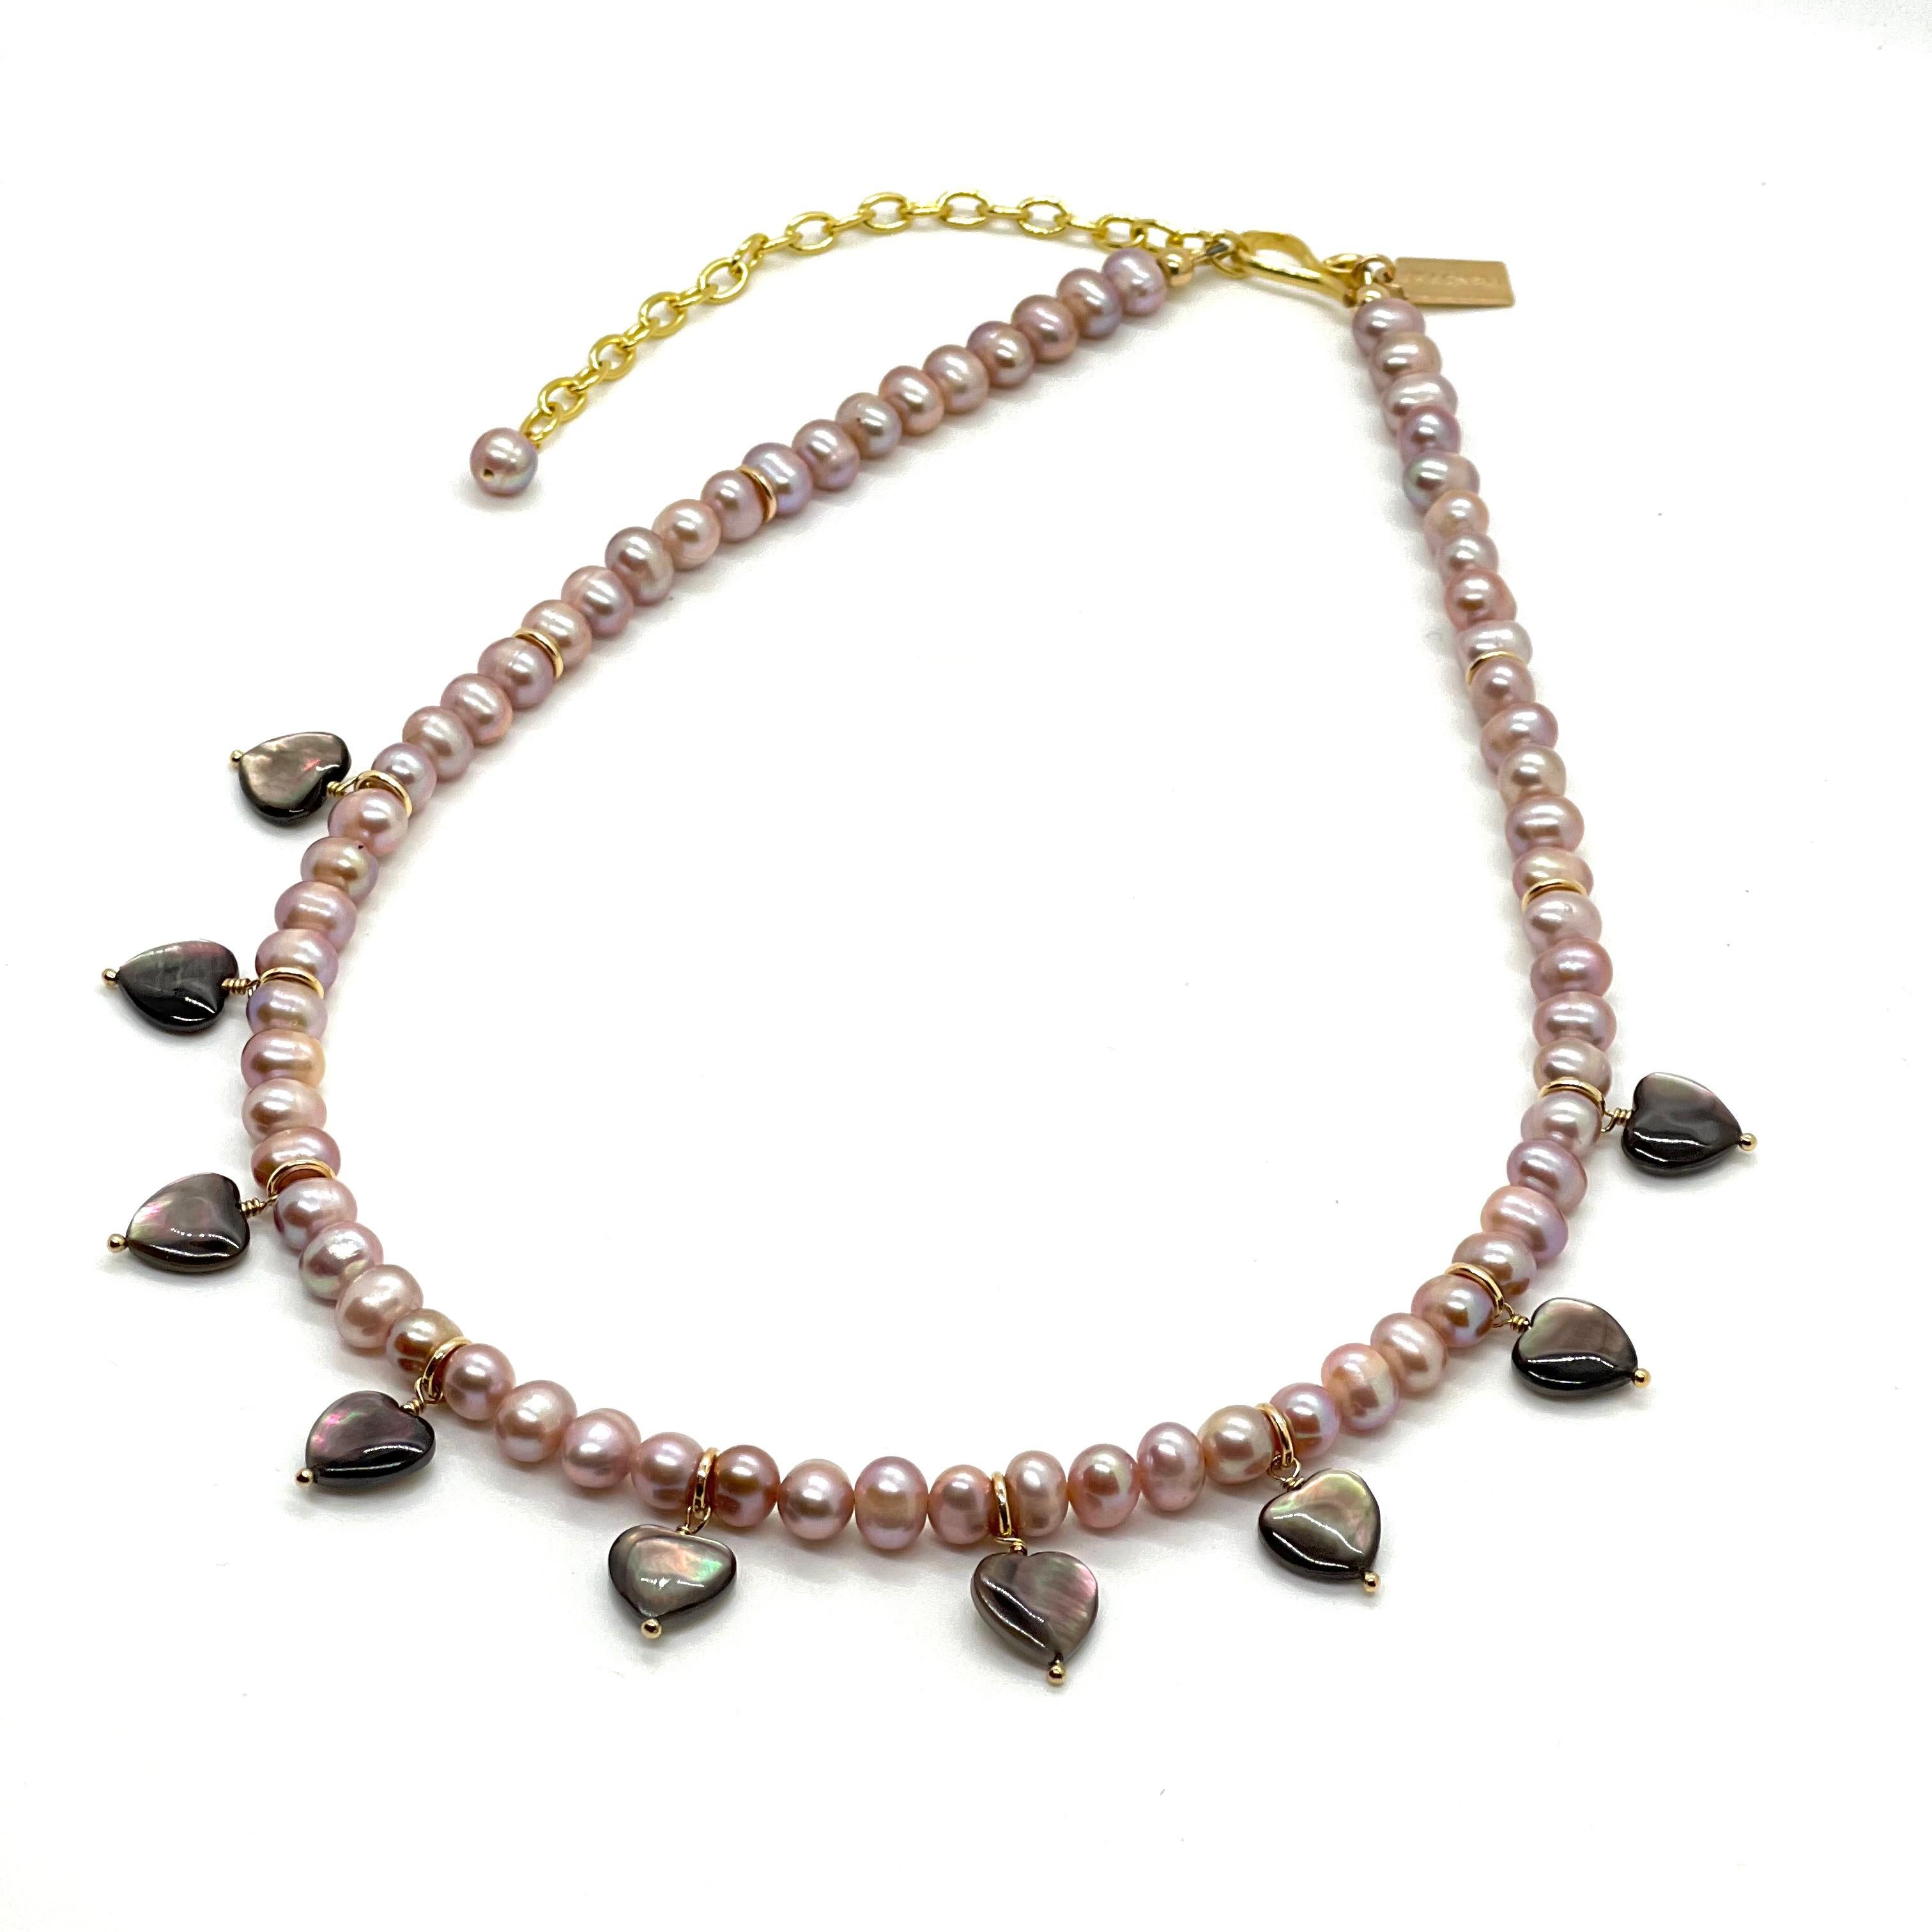 Ce collier est composé de perles ovales lavande avec des cœurs artisanaux en coquillages noirs de Tahiti. Les coquilles de Tahiti noires donnent un magnifique éclat irisé, c'est comme avoir des arcs-en-ciel dans ces mini-cœurs. C'est magnifique. Il